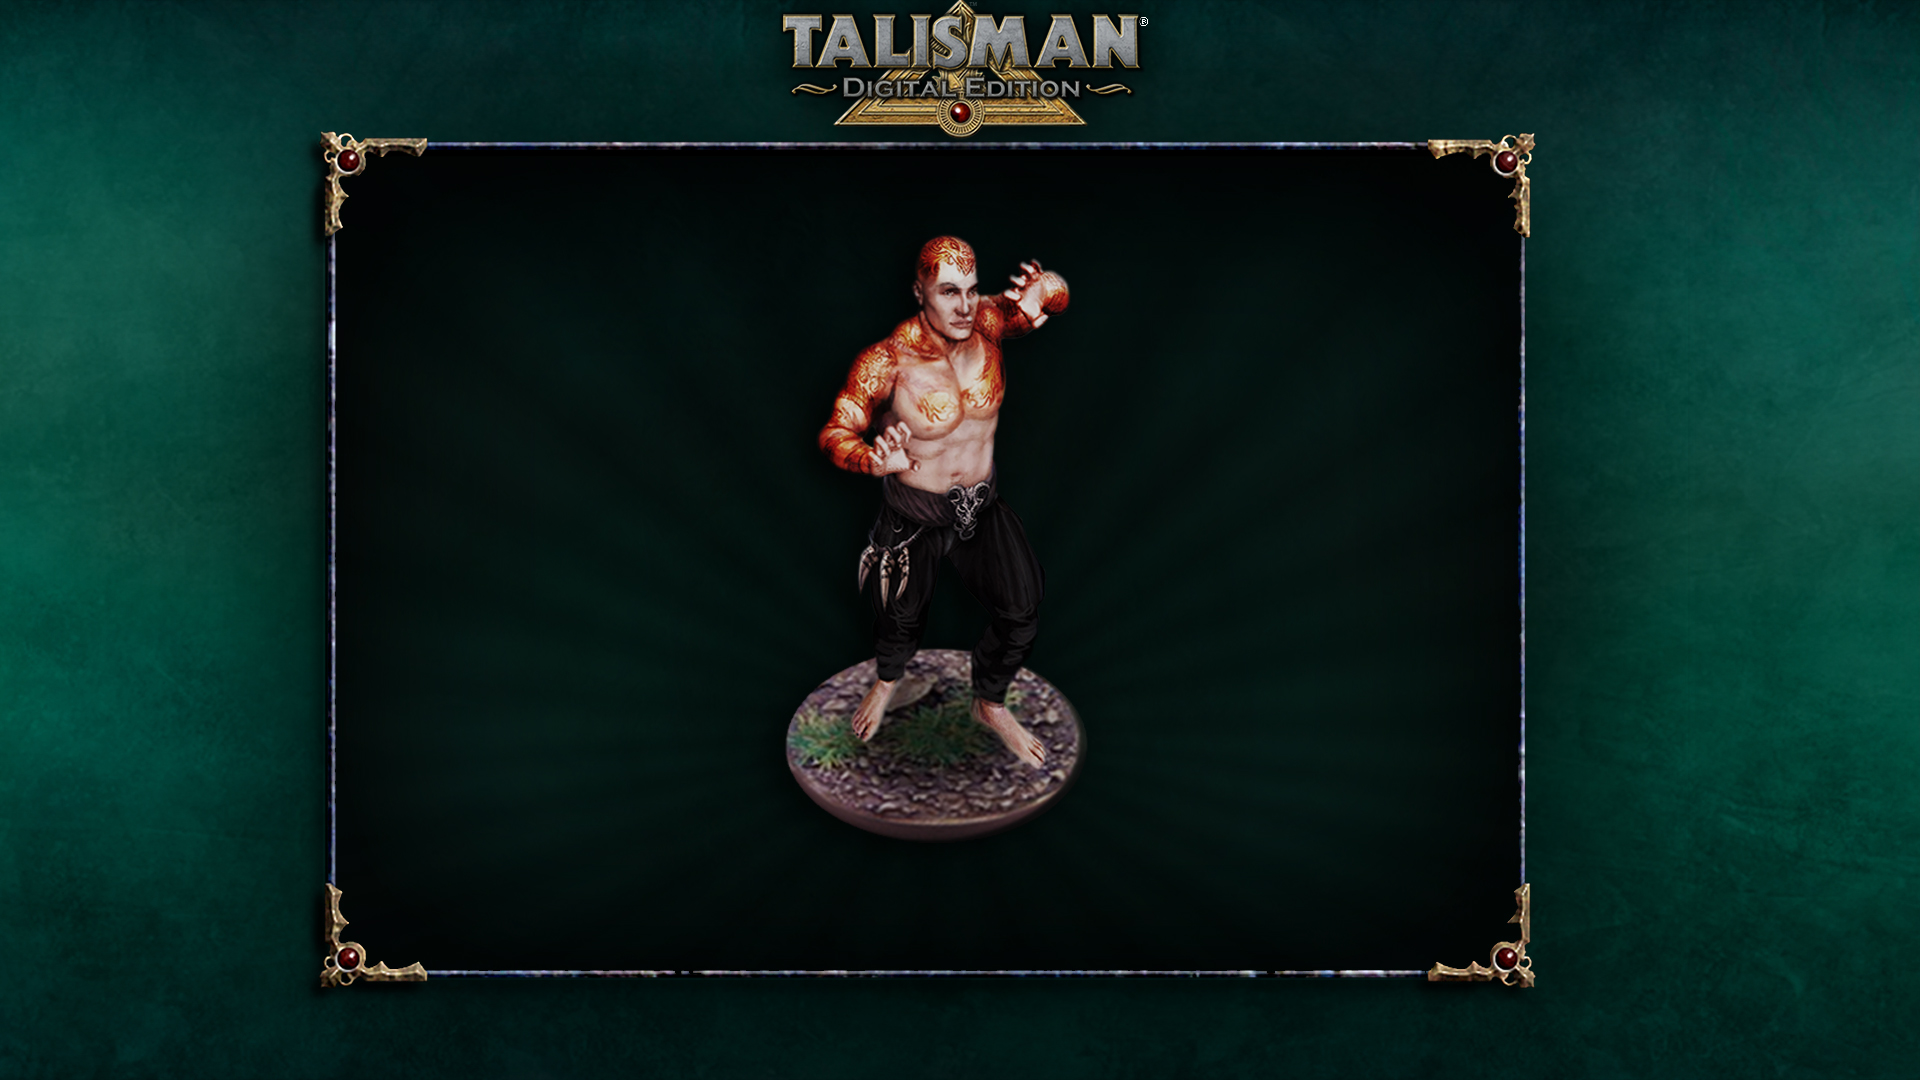 Talisman Character - Martial Artist screenshot